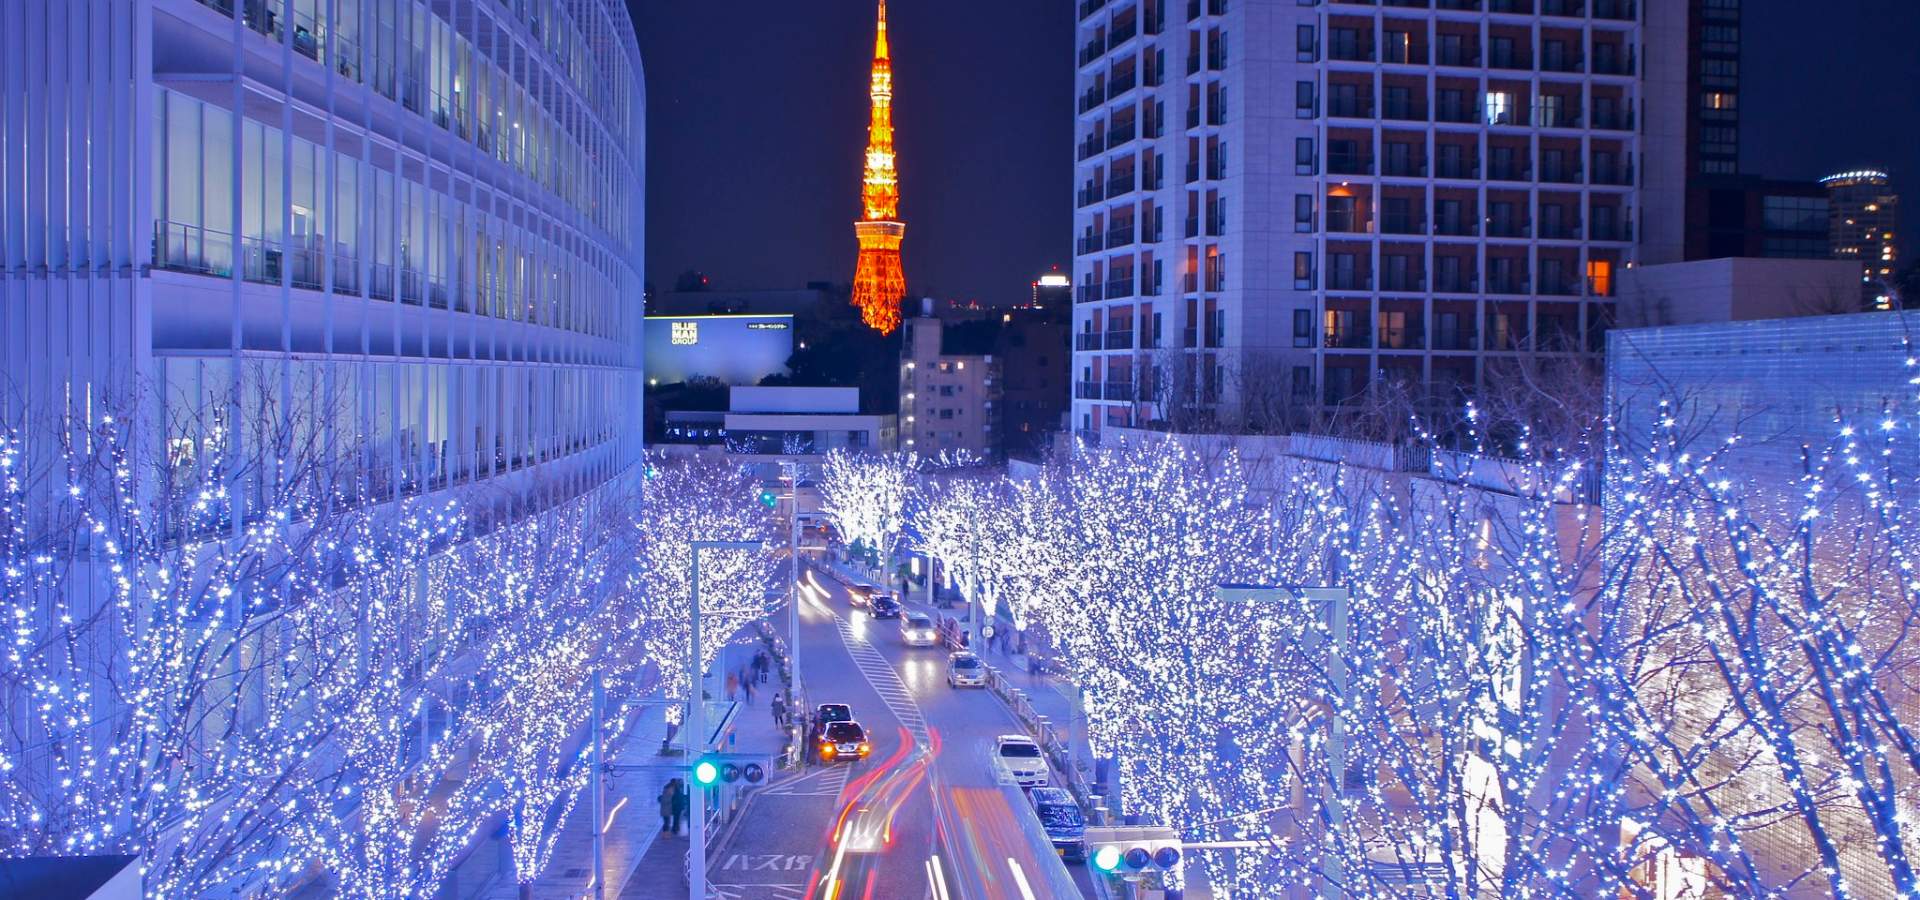 کریسمس در توکیو ژاپن